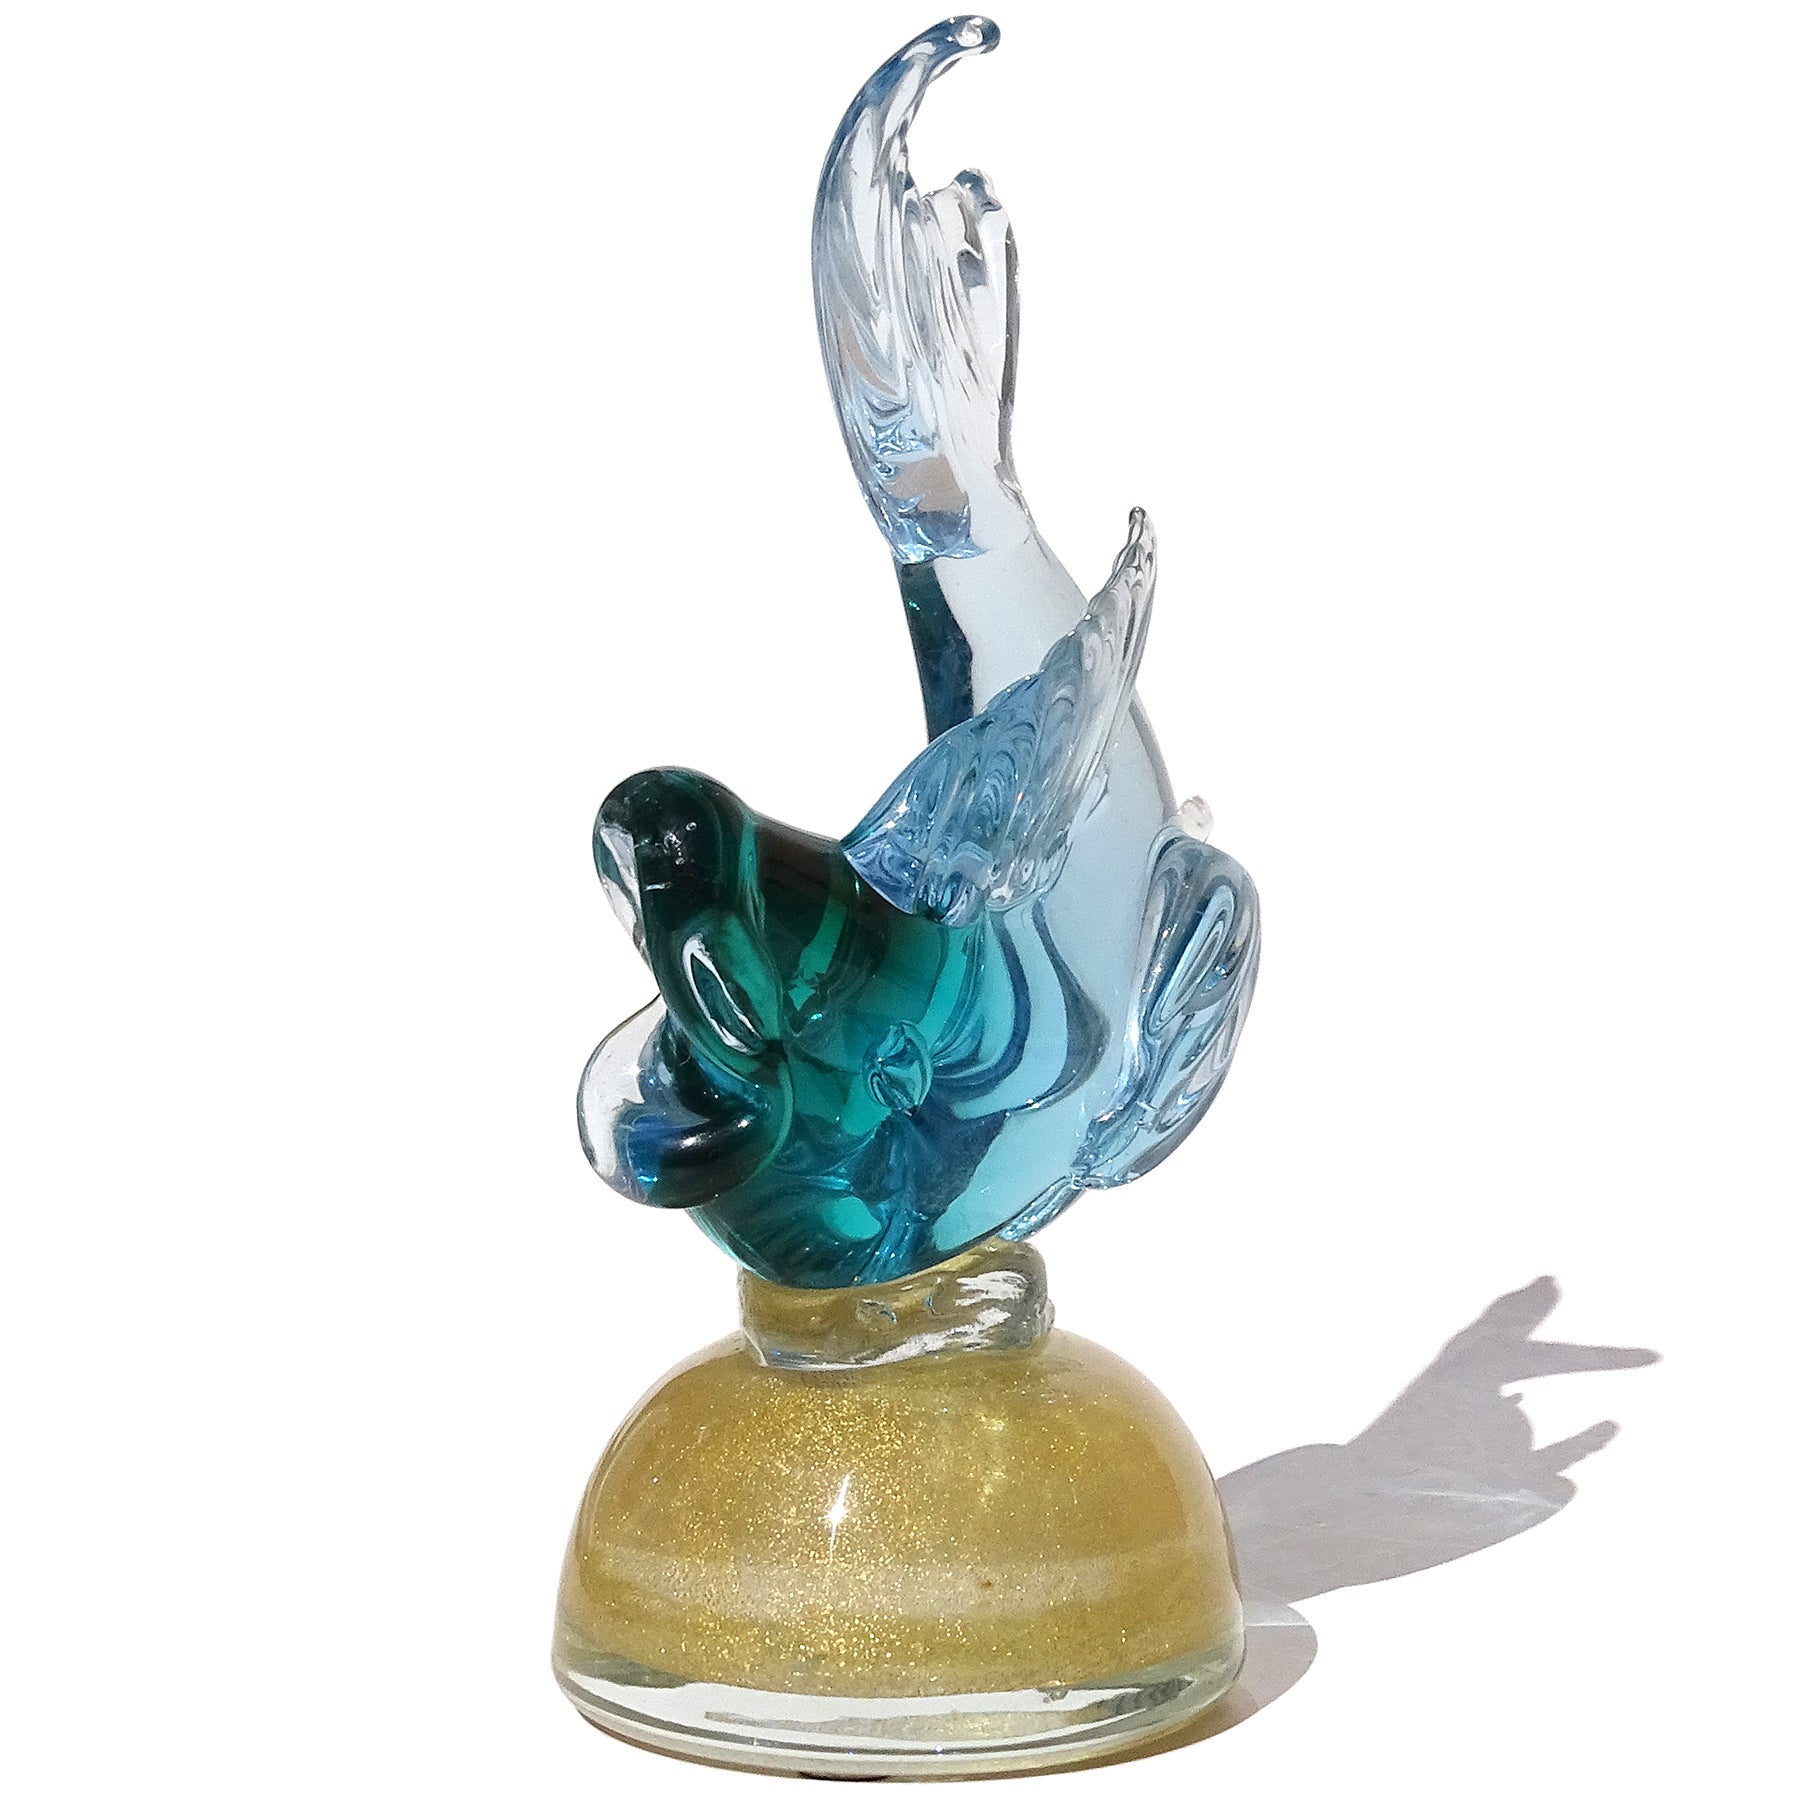 Magnifique sculpture de poisson en verre soufflé à la bouche de Murano, vert à bleu et mouchetures d'or, sur piédestal. D'après les documents, il s'agit du maître verrier et designer Alfredo Barbini, vers les années 1950-60. Publié dans son